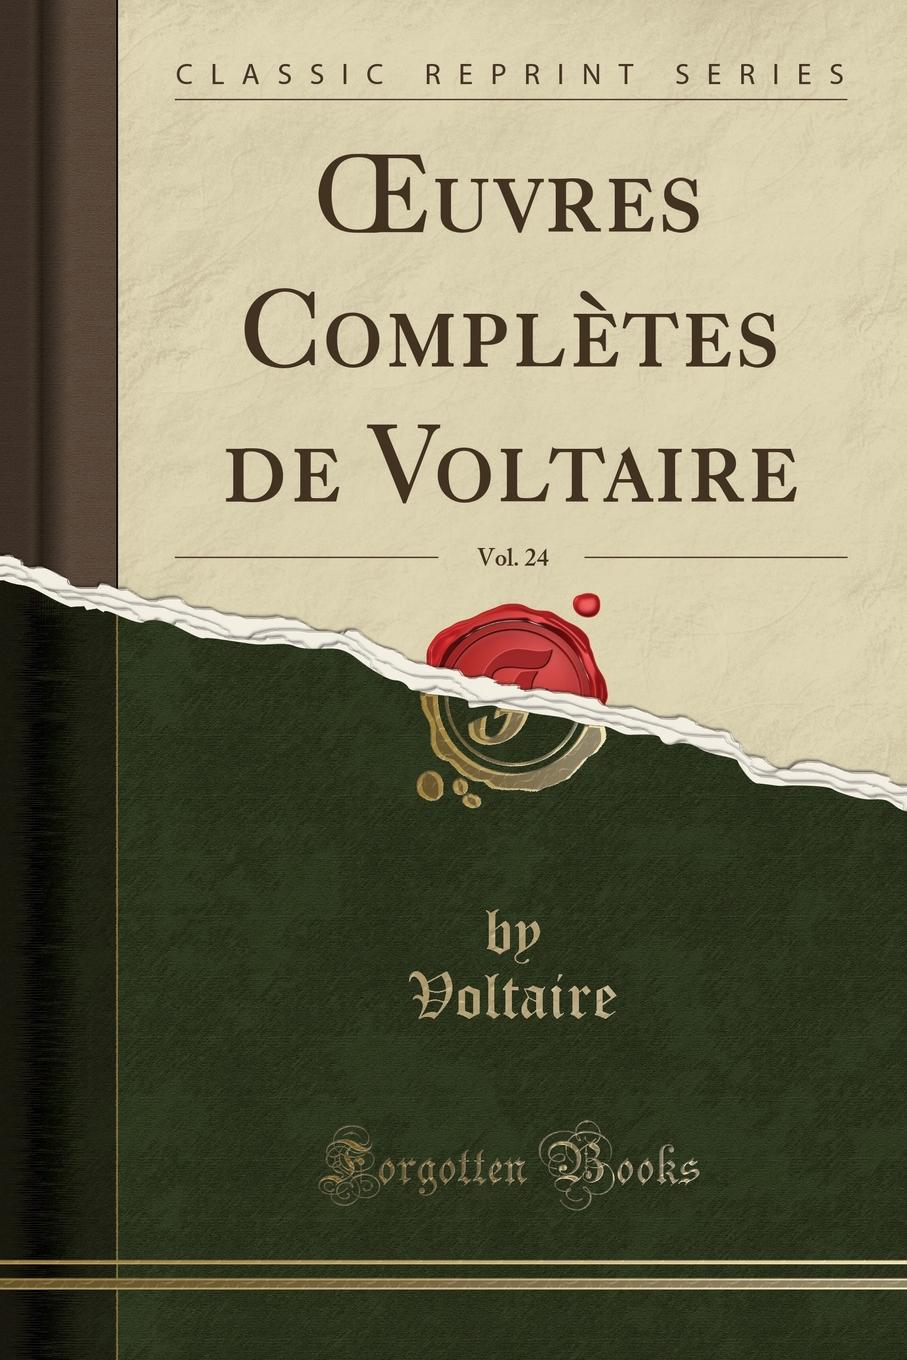 Voltaire Voltaire OEuvres Completes de Voltaire, Vol. 24 (Classic Reprint)